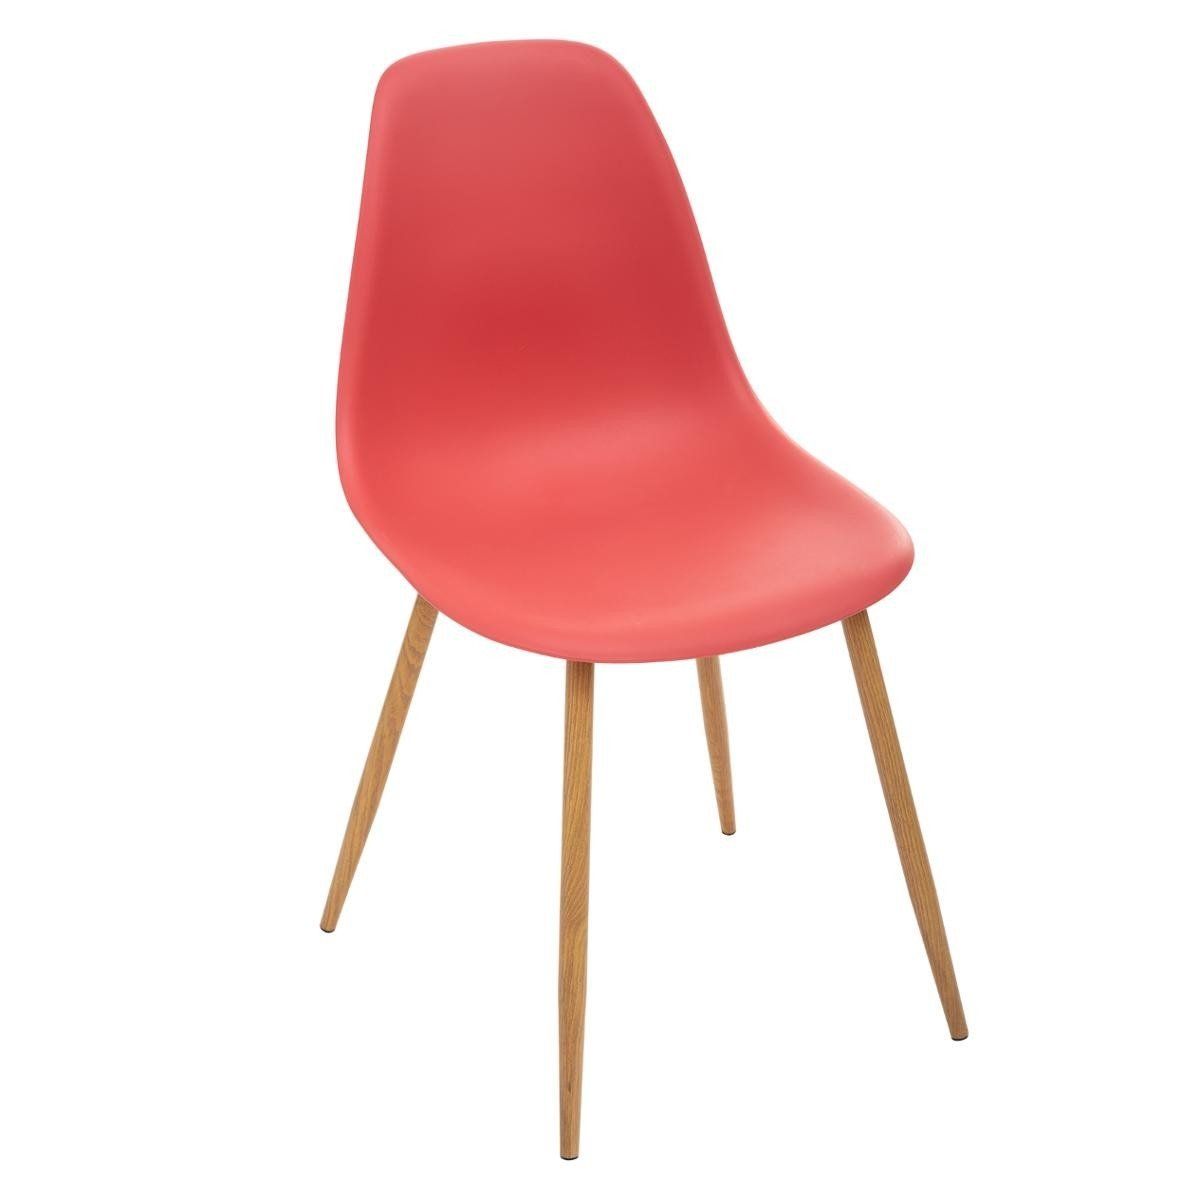 Atmosphera skandinávský styl půdní židle pro jídelnu, barva červená - EMAKO.CZ s.r.o.